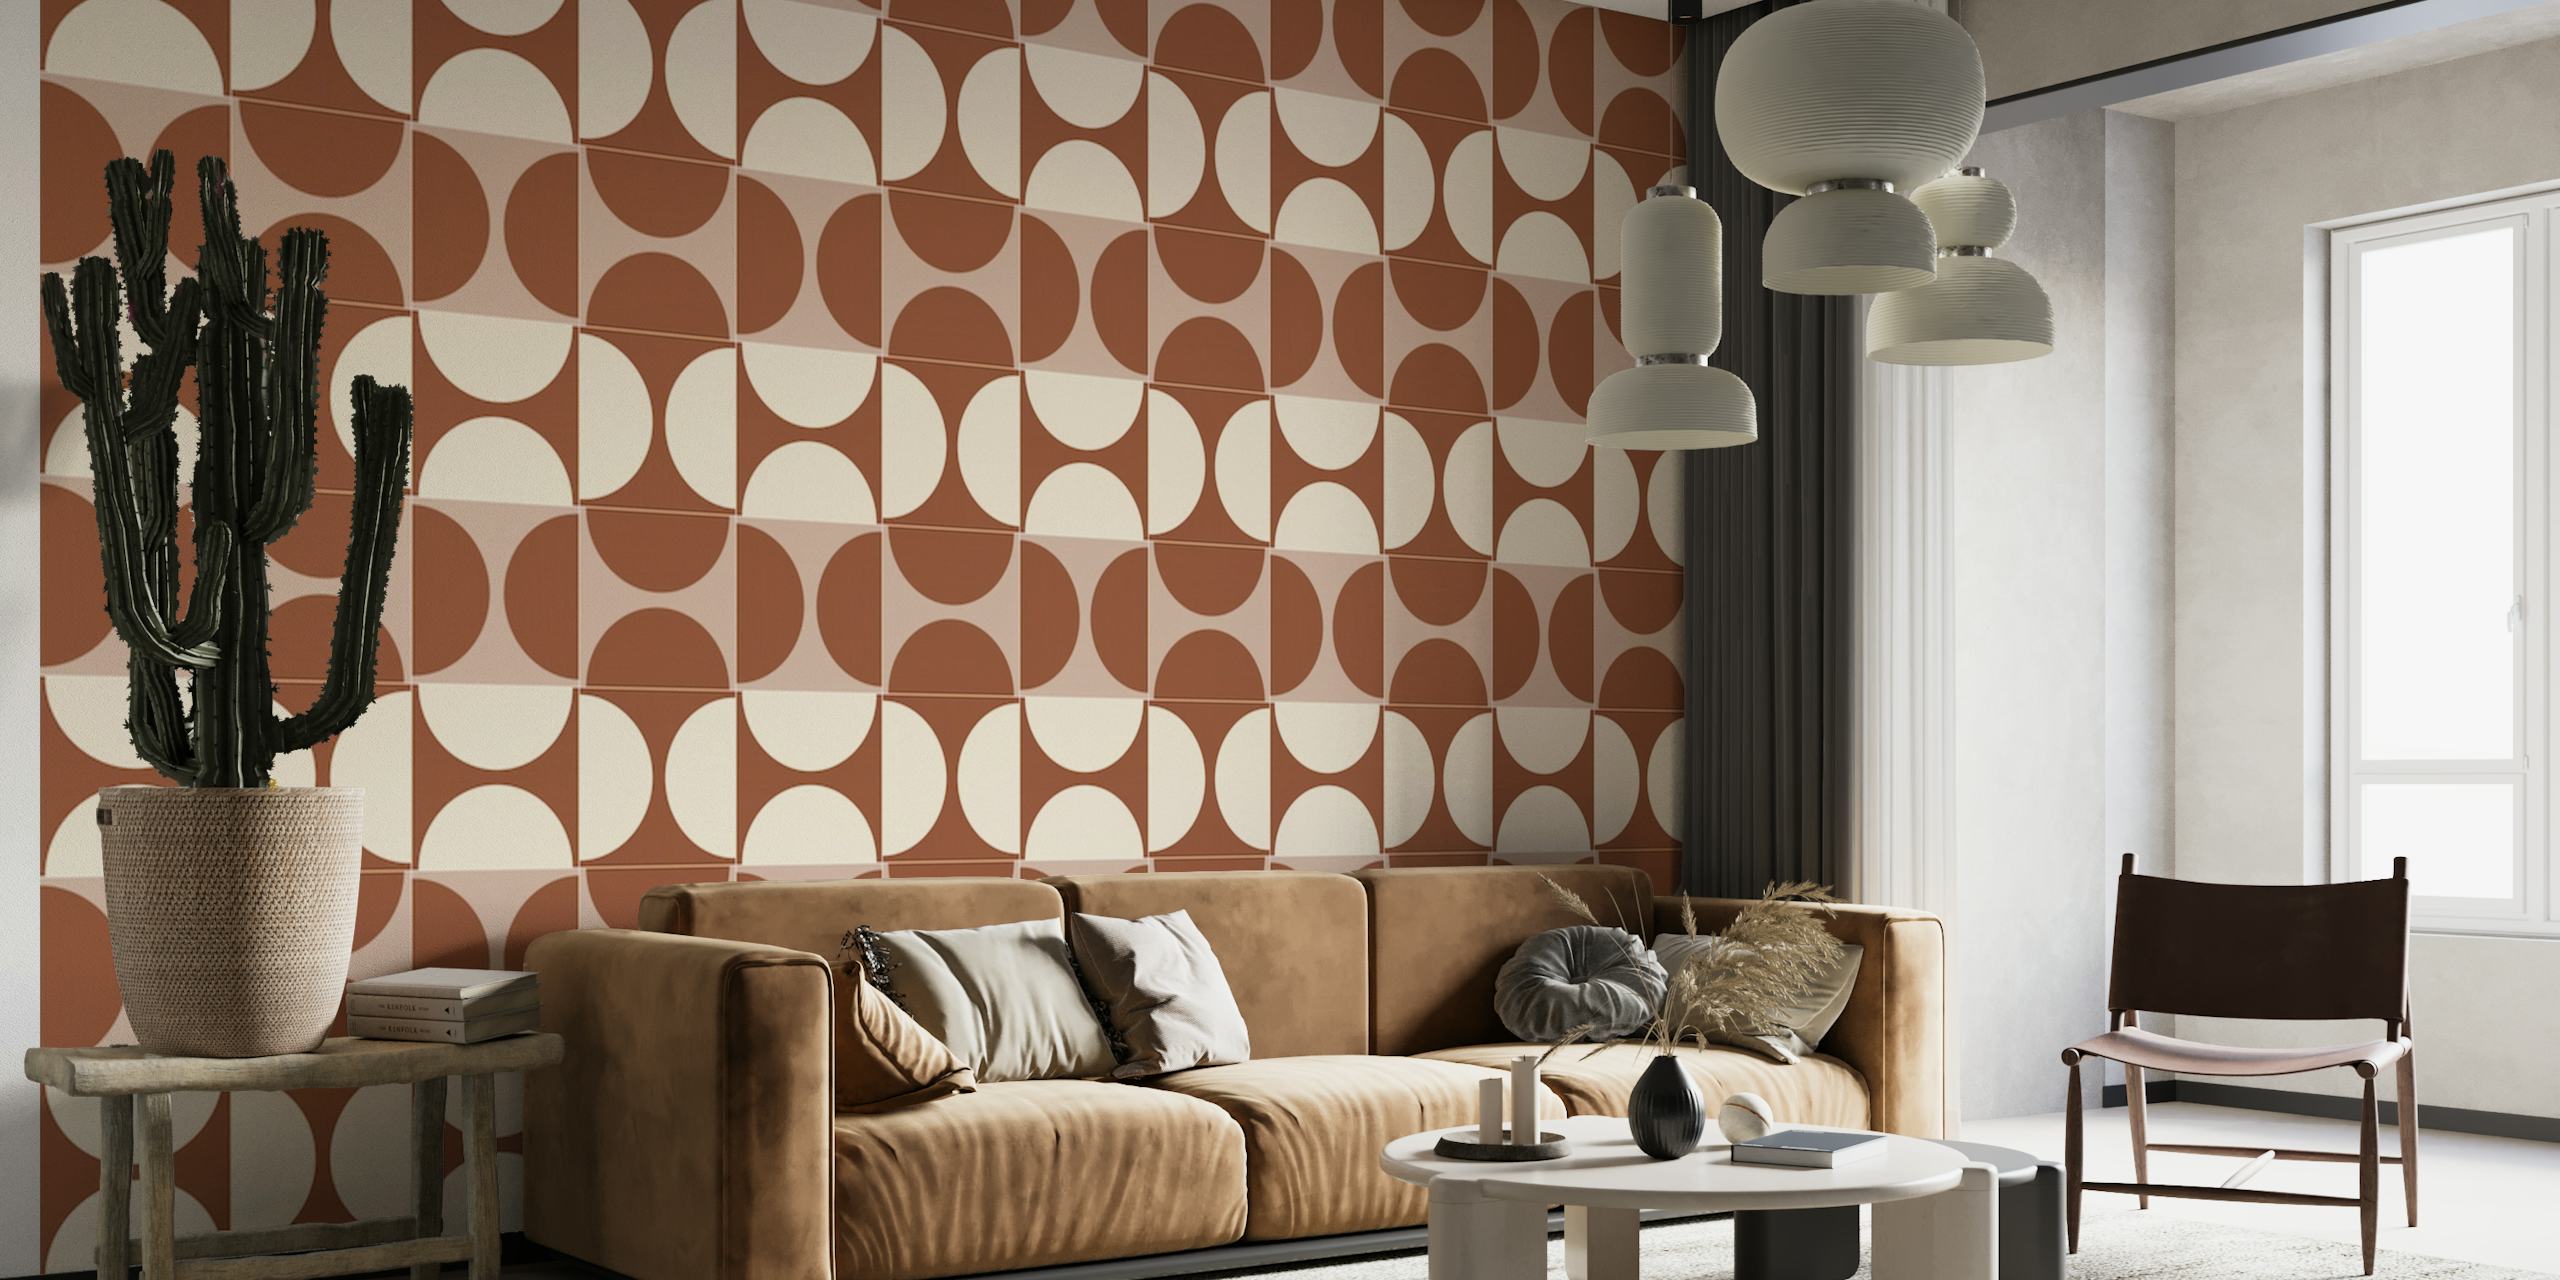 Cotto Tiles Cinnamon en Cream Lines-patroon voor muurschildering